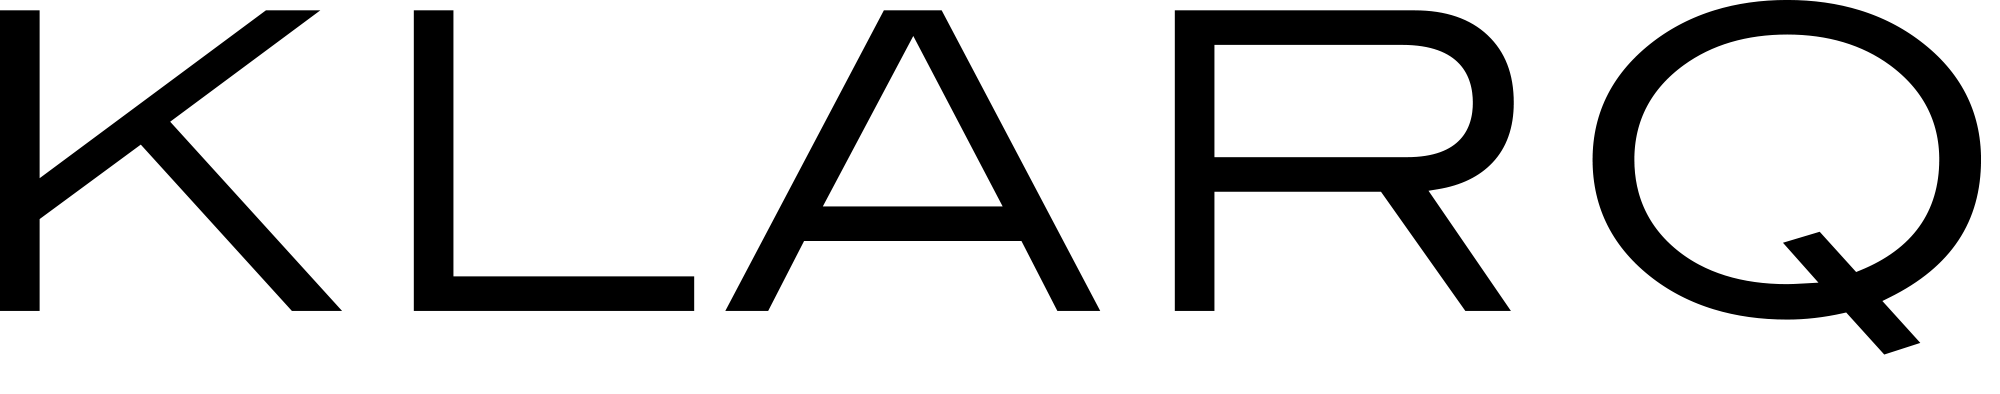 KLARQ Logo Email Signature